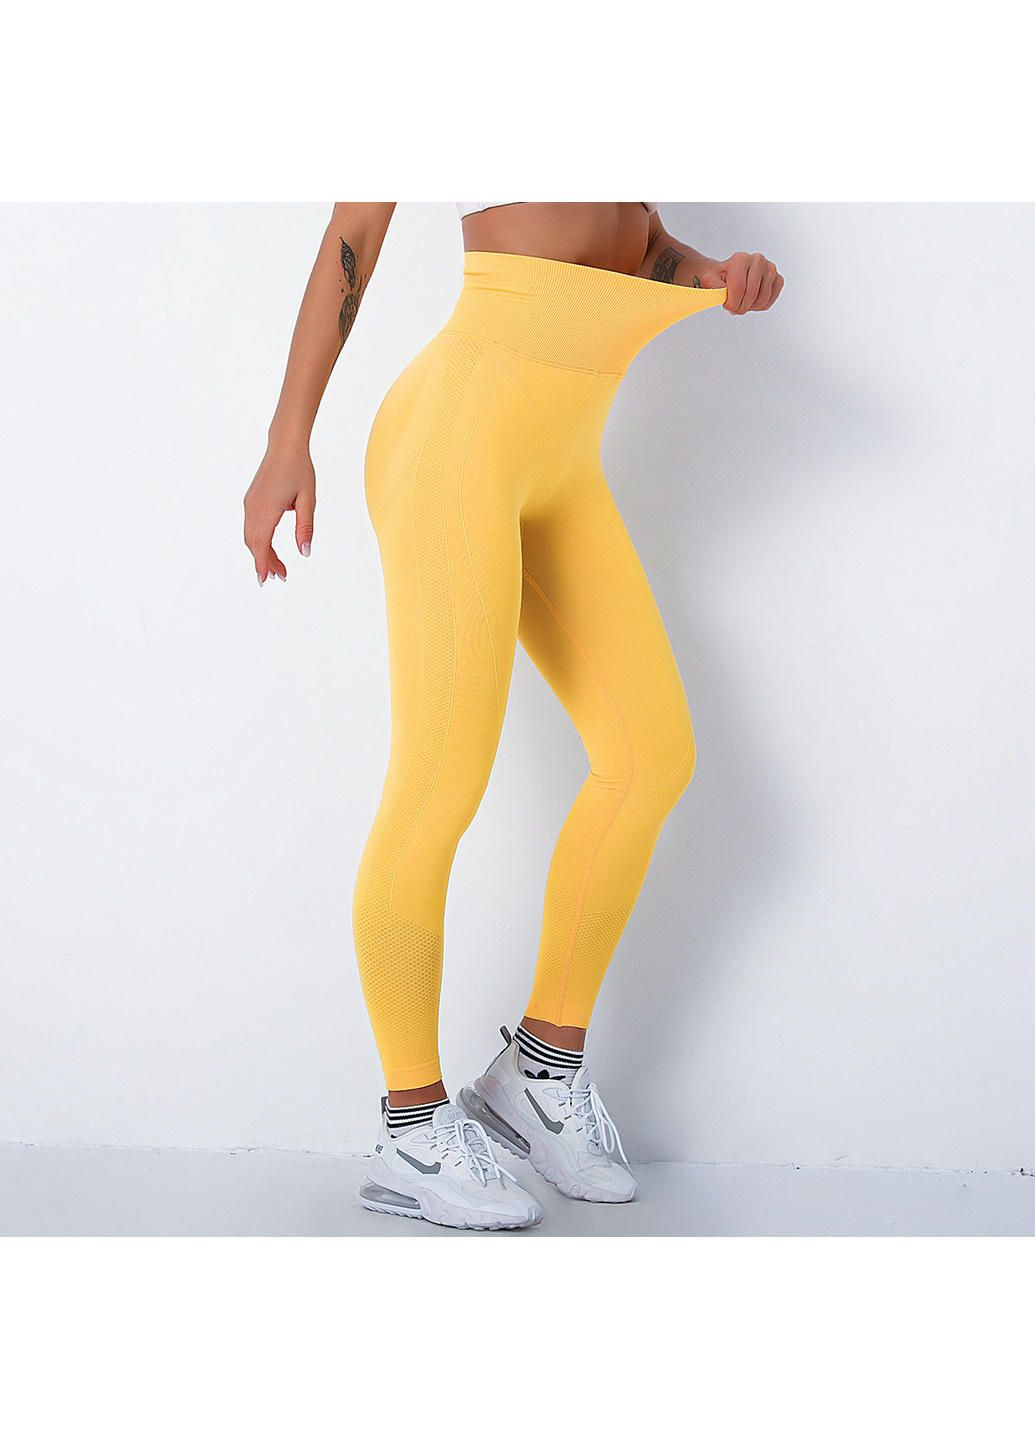 Комбинированные демисезонные леггинсы женские спортивные 10900 m жёлтые Fashion